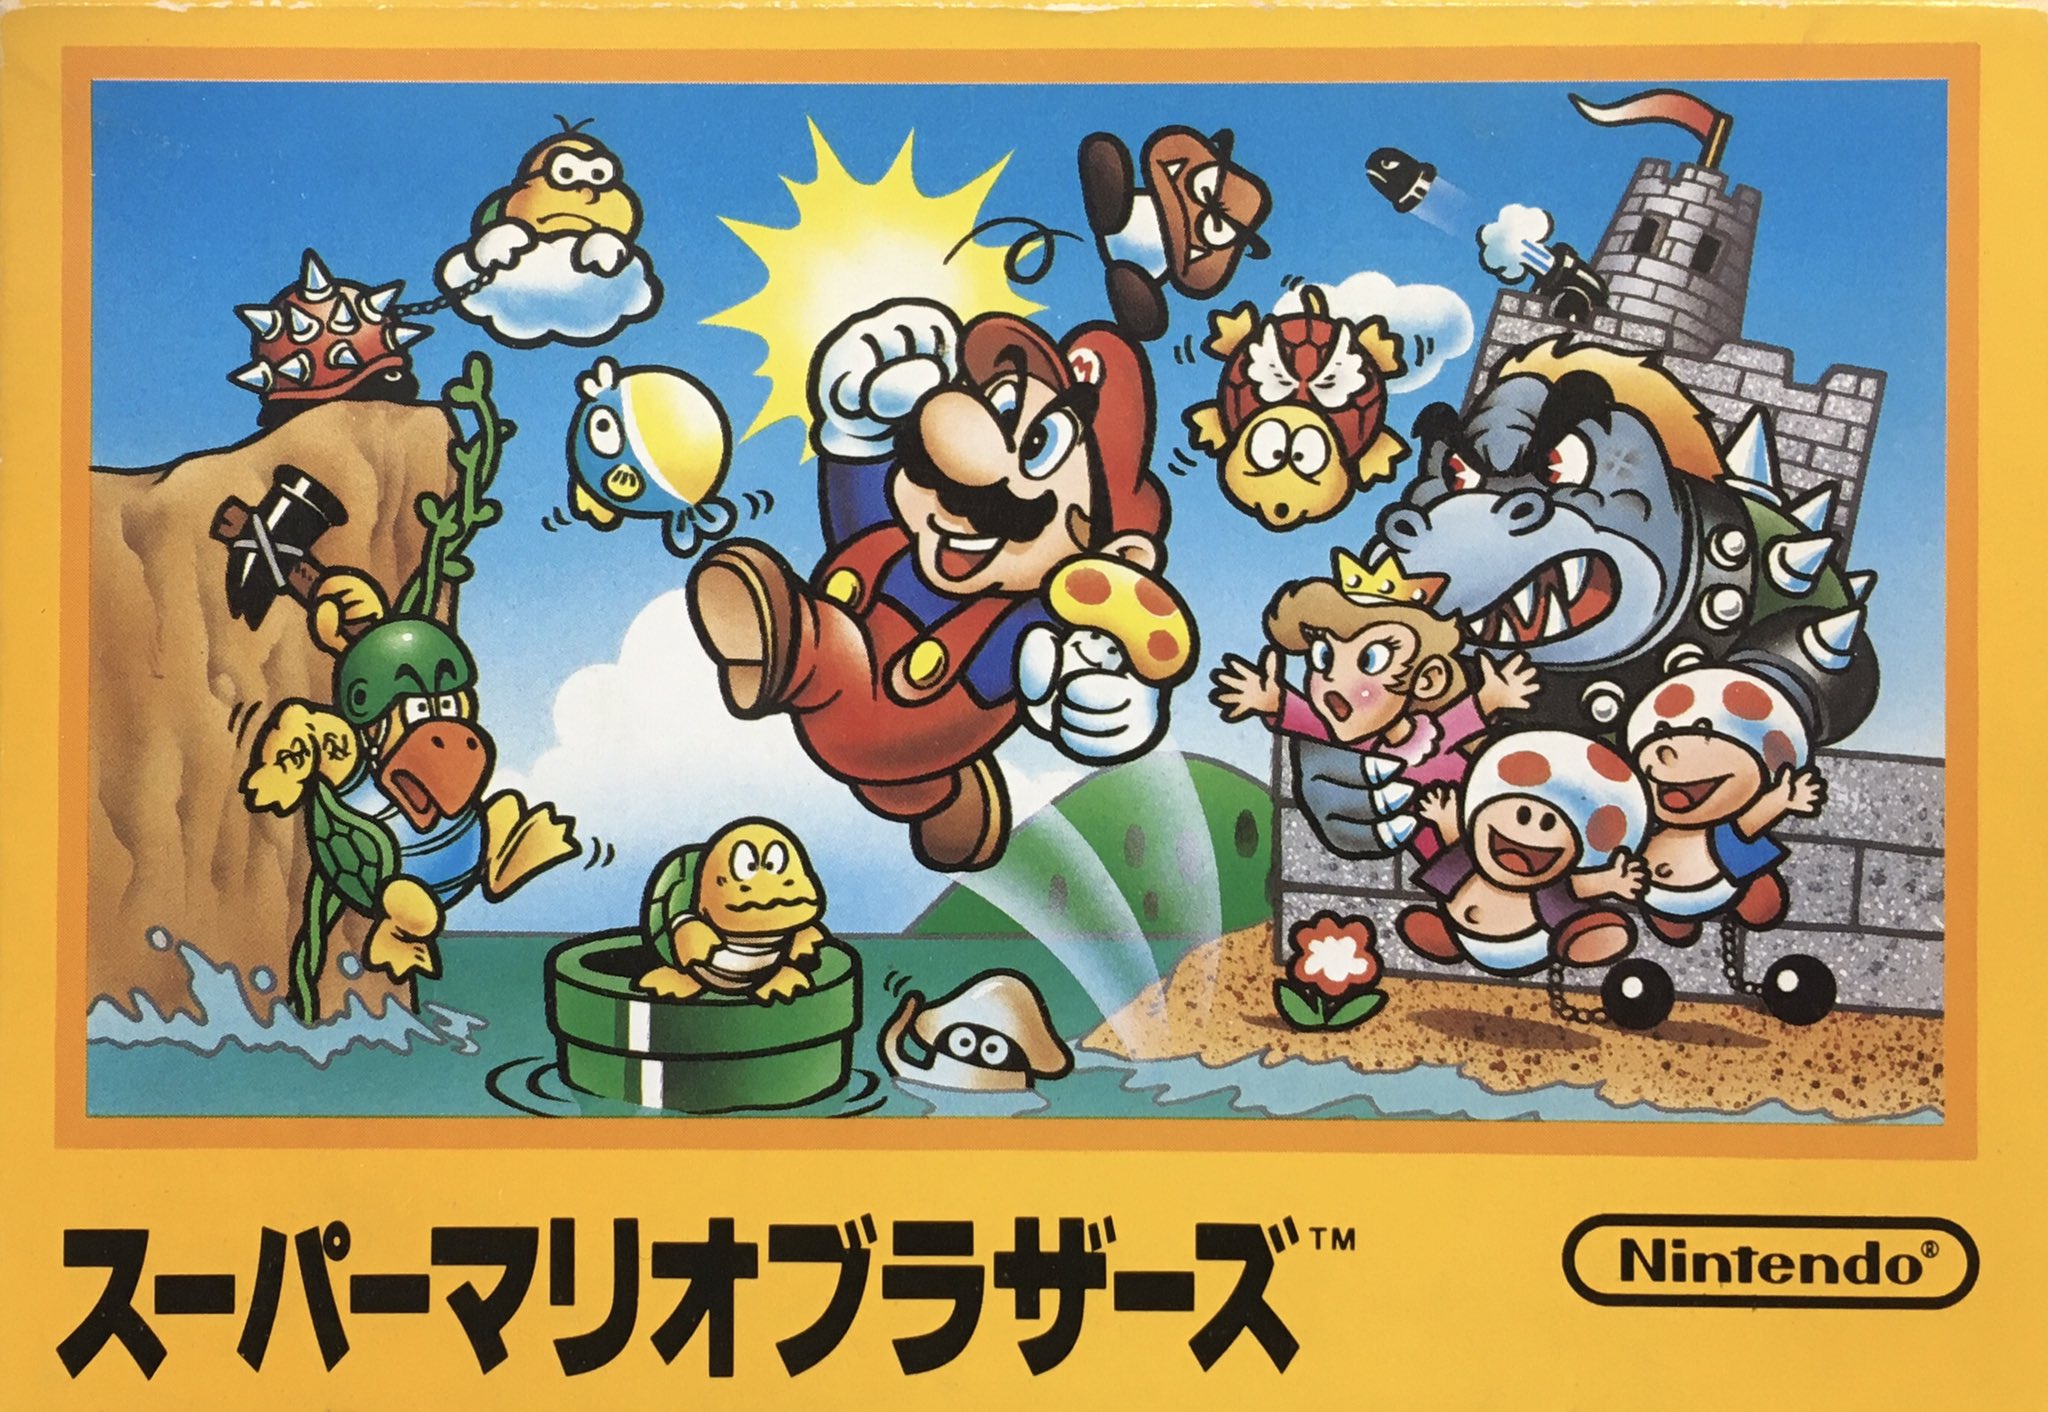 Mario bros snes. Super Mario Bros Famicom обложка. Super Mario Bros NES обложка. Super Mario Bros 3 Famicom. Super Mario Bros 1985 Nintendo.